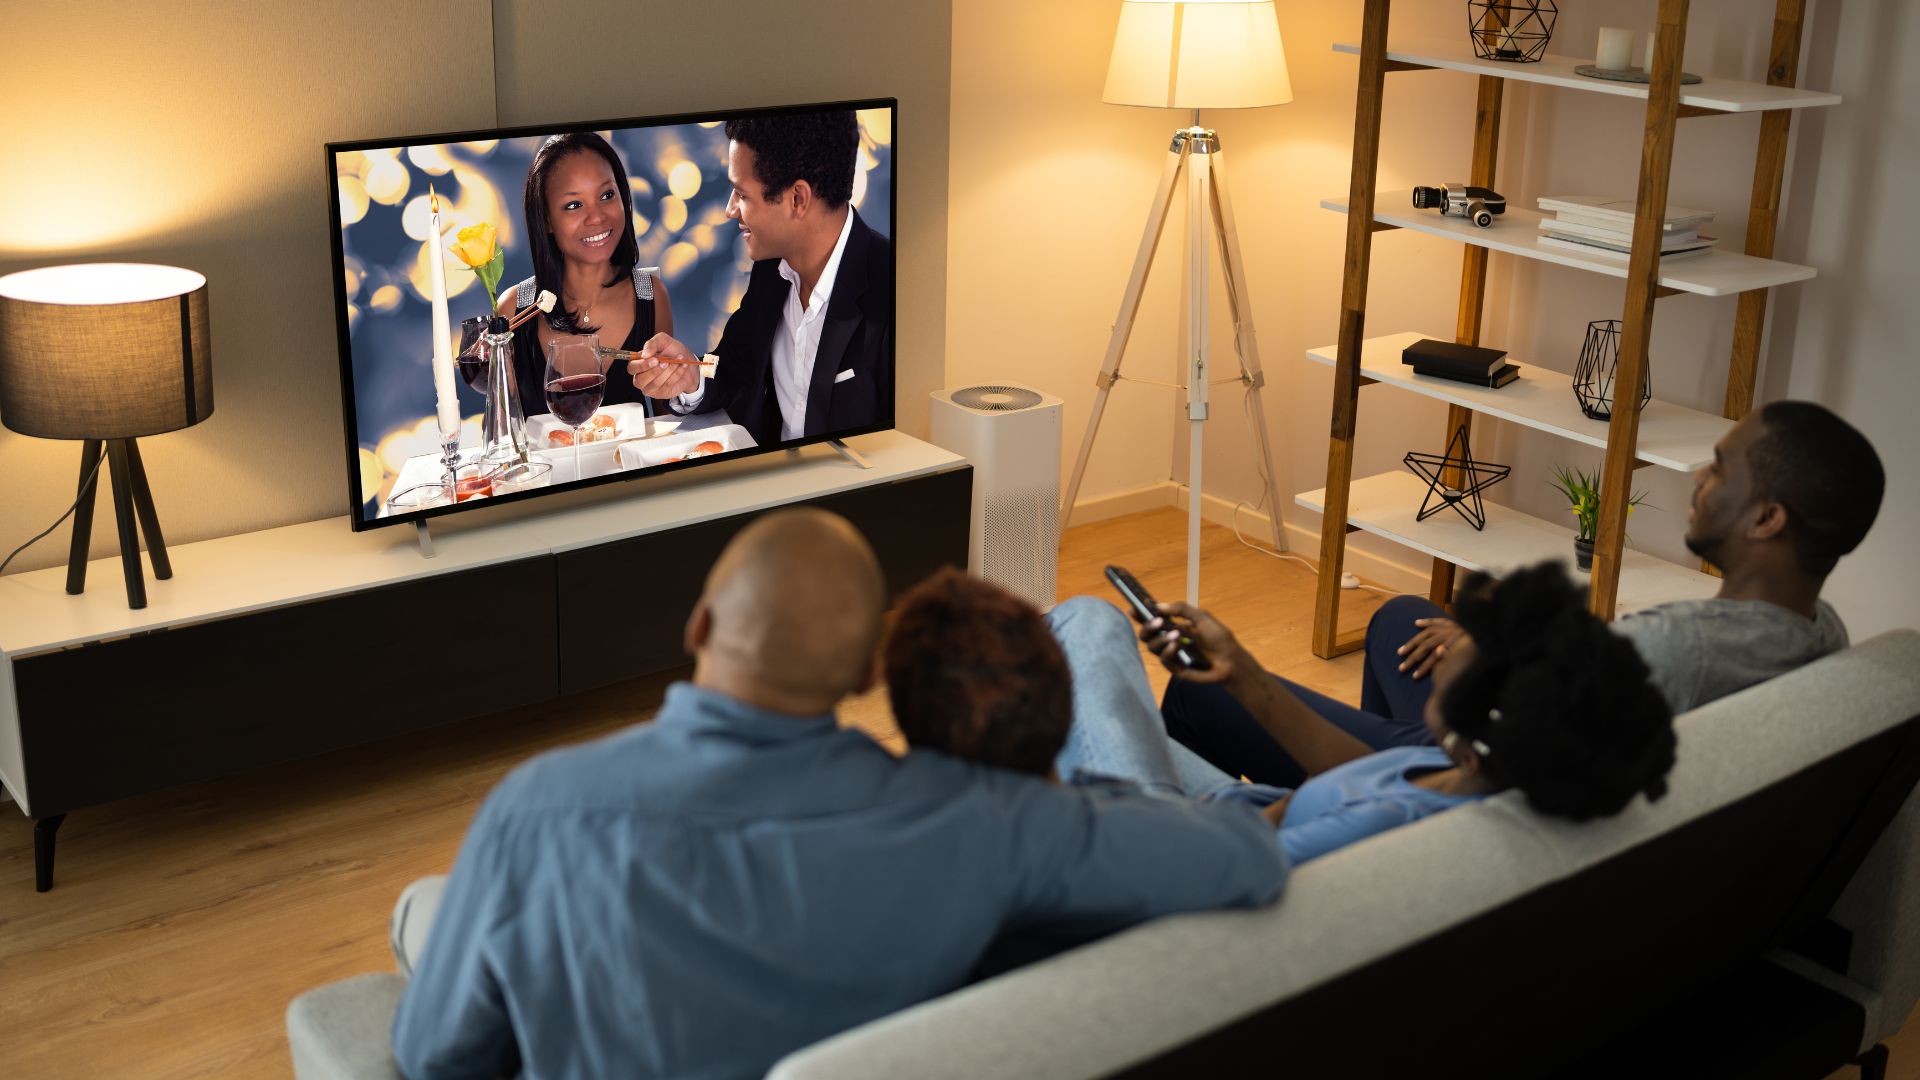 Imagem de uma família reunida assistindo televisão